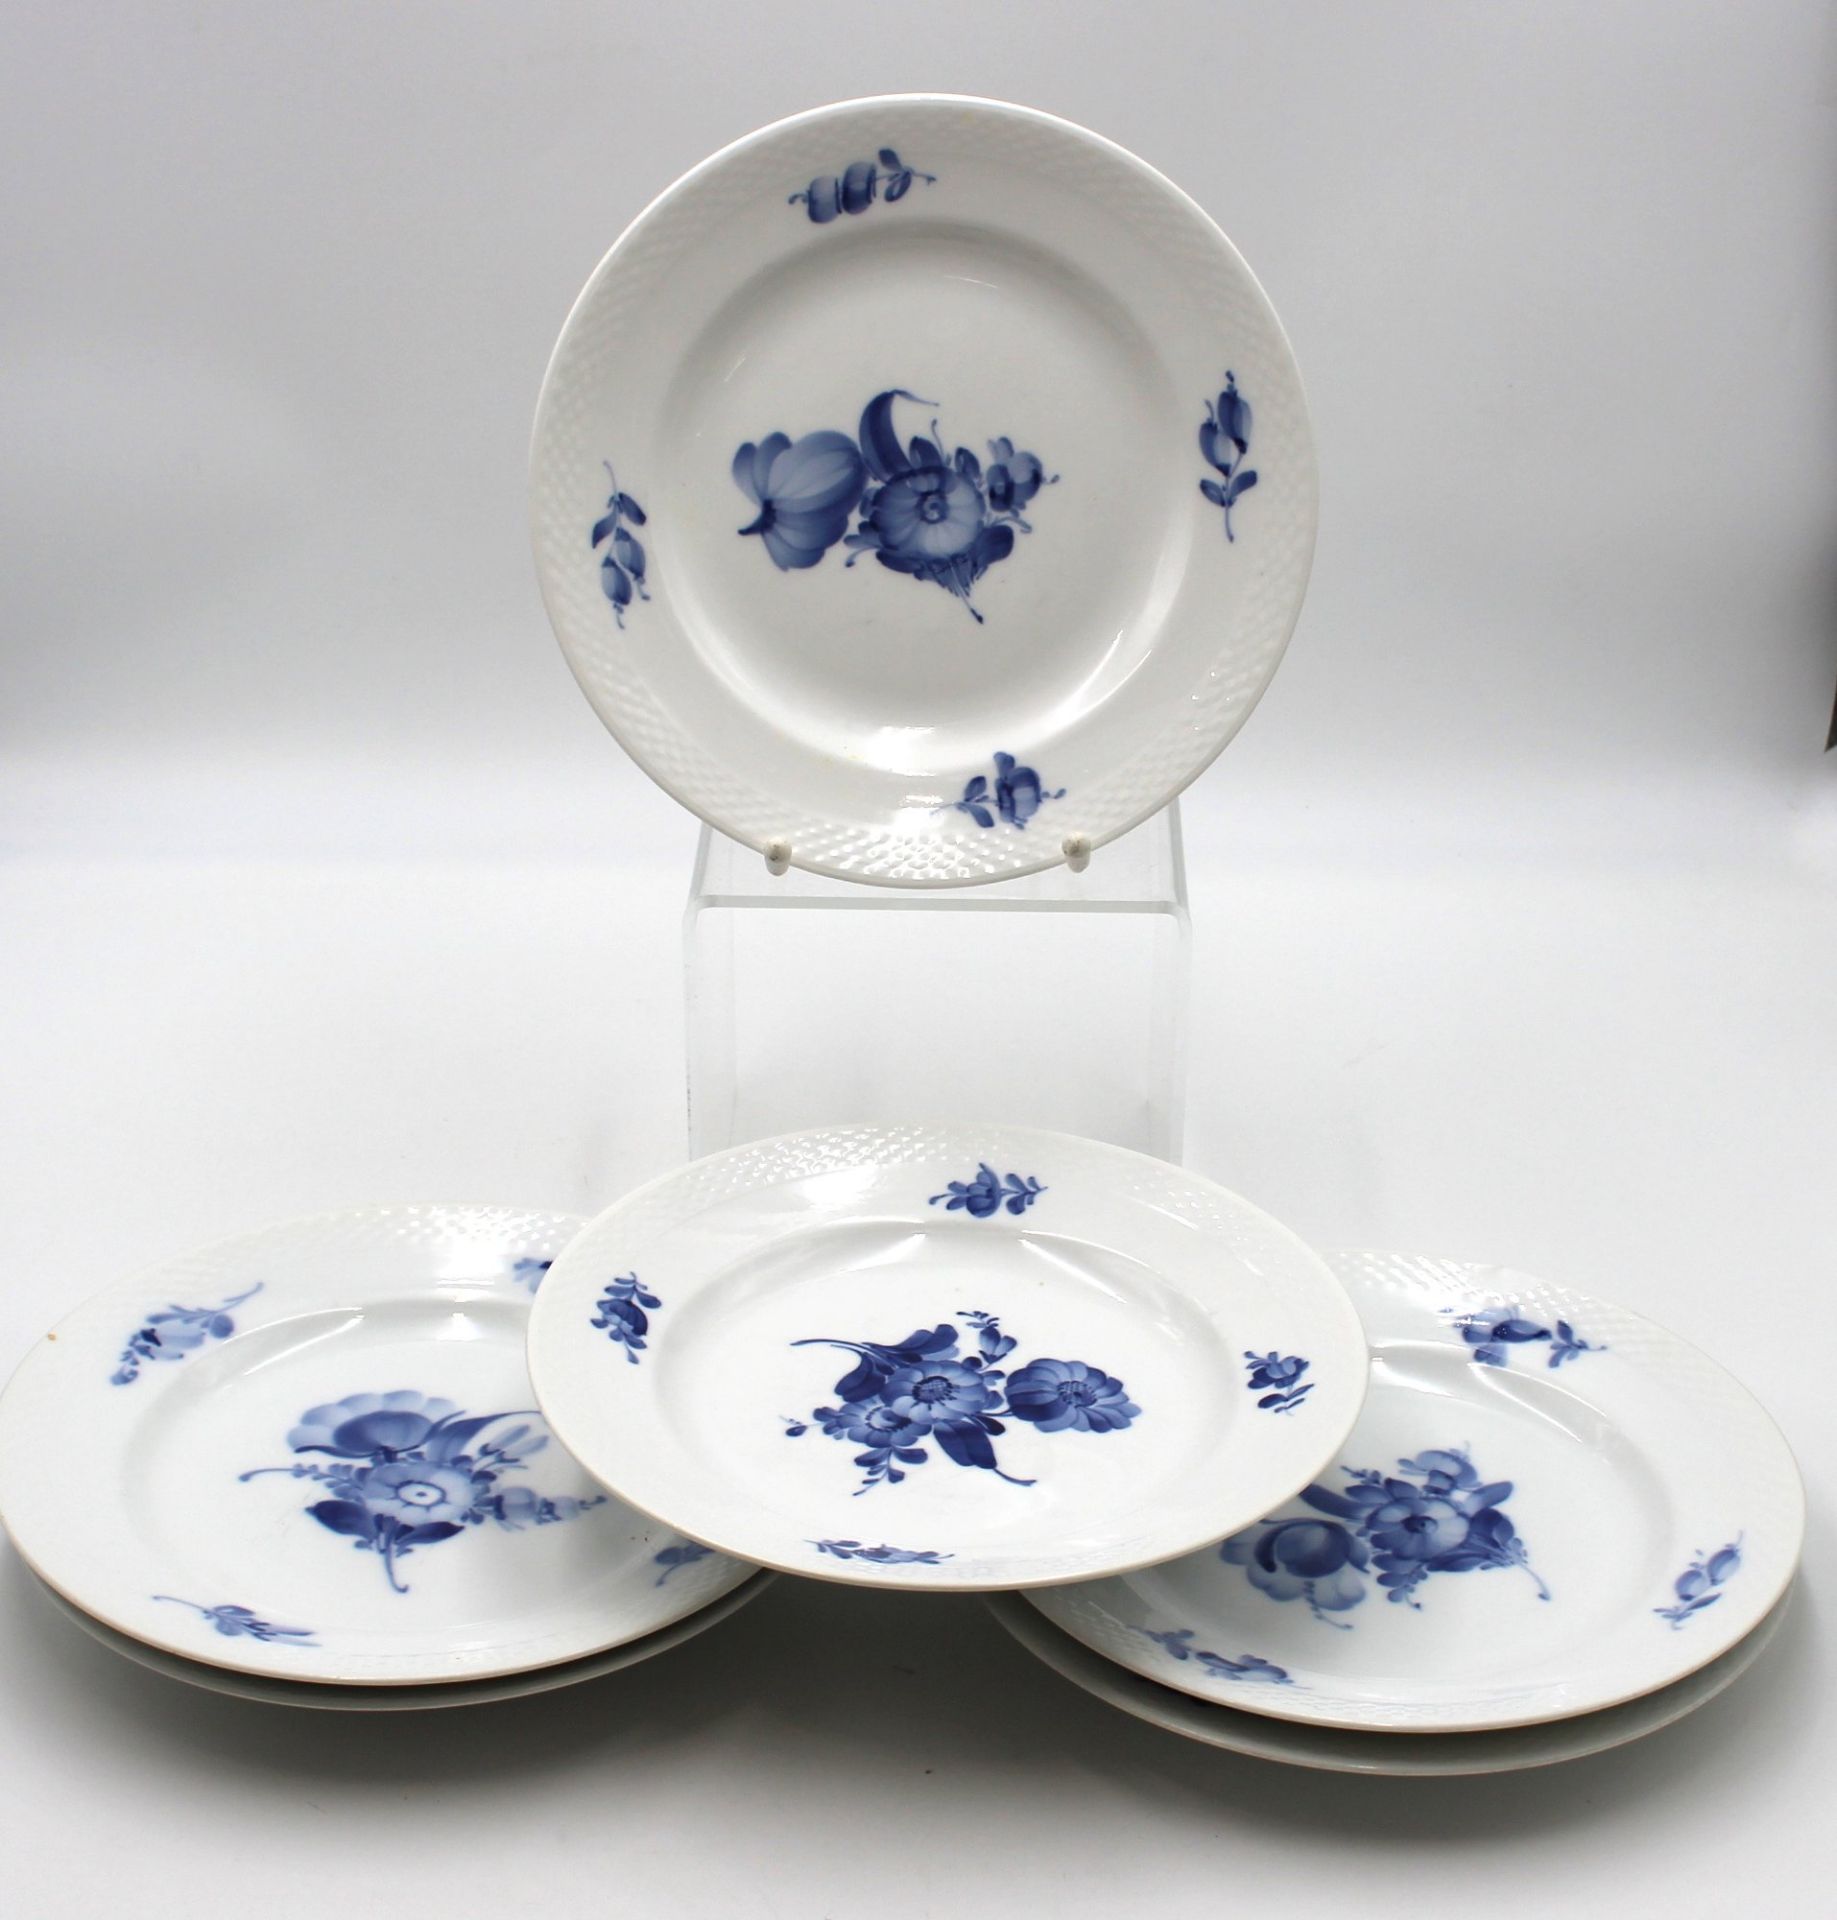 6x flache Teller, Royal Copenhagen, blaue Blume, 2 Teller mit Bestossungen, 1x MArke durchschliffen - Image 2 of 4